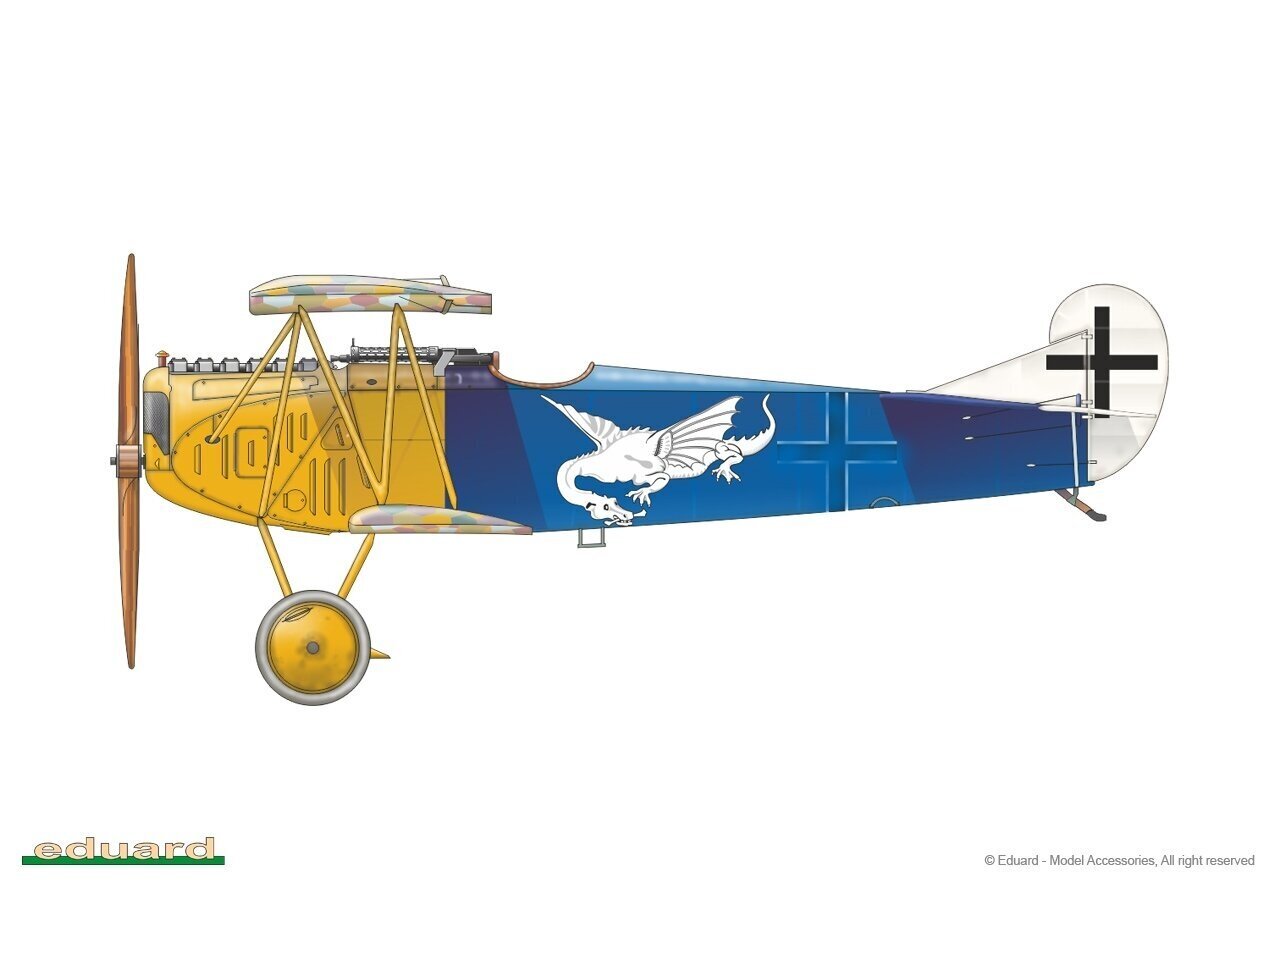 Plastikinis surenkamas modelis Fokker D.VII OAW Eduard, 84155 kaina ir informacija | Konstruktoriai ir kaladėlės | pigu.lt